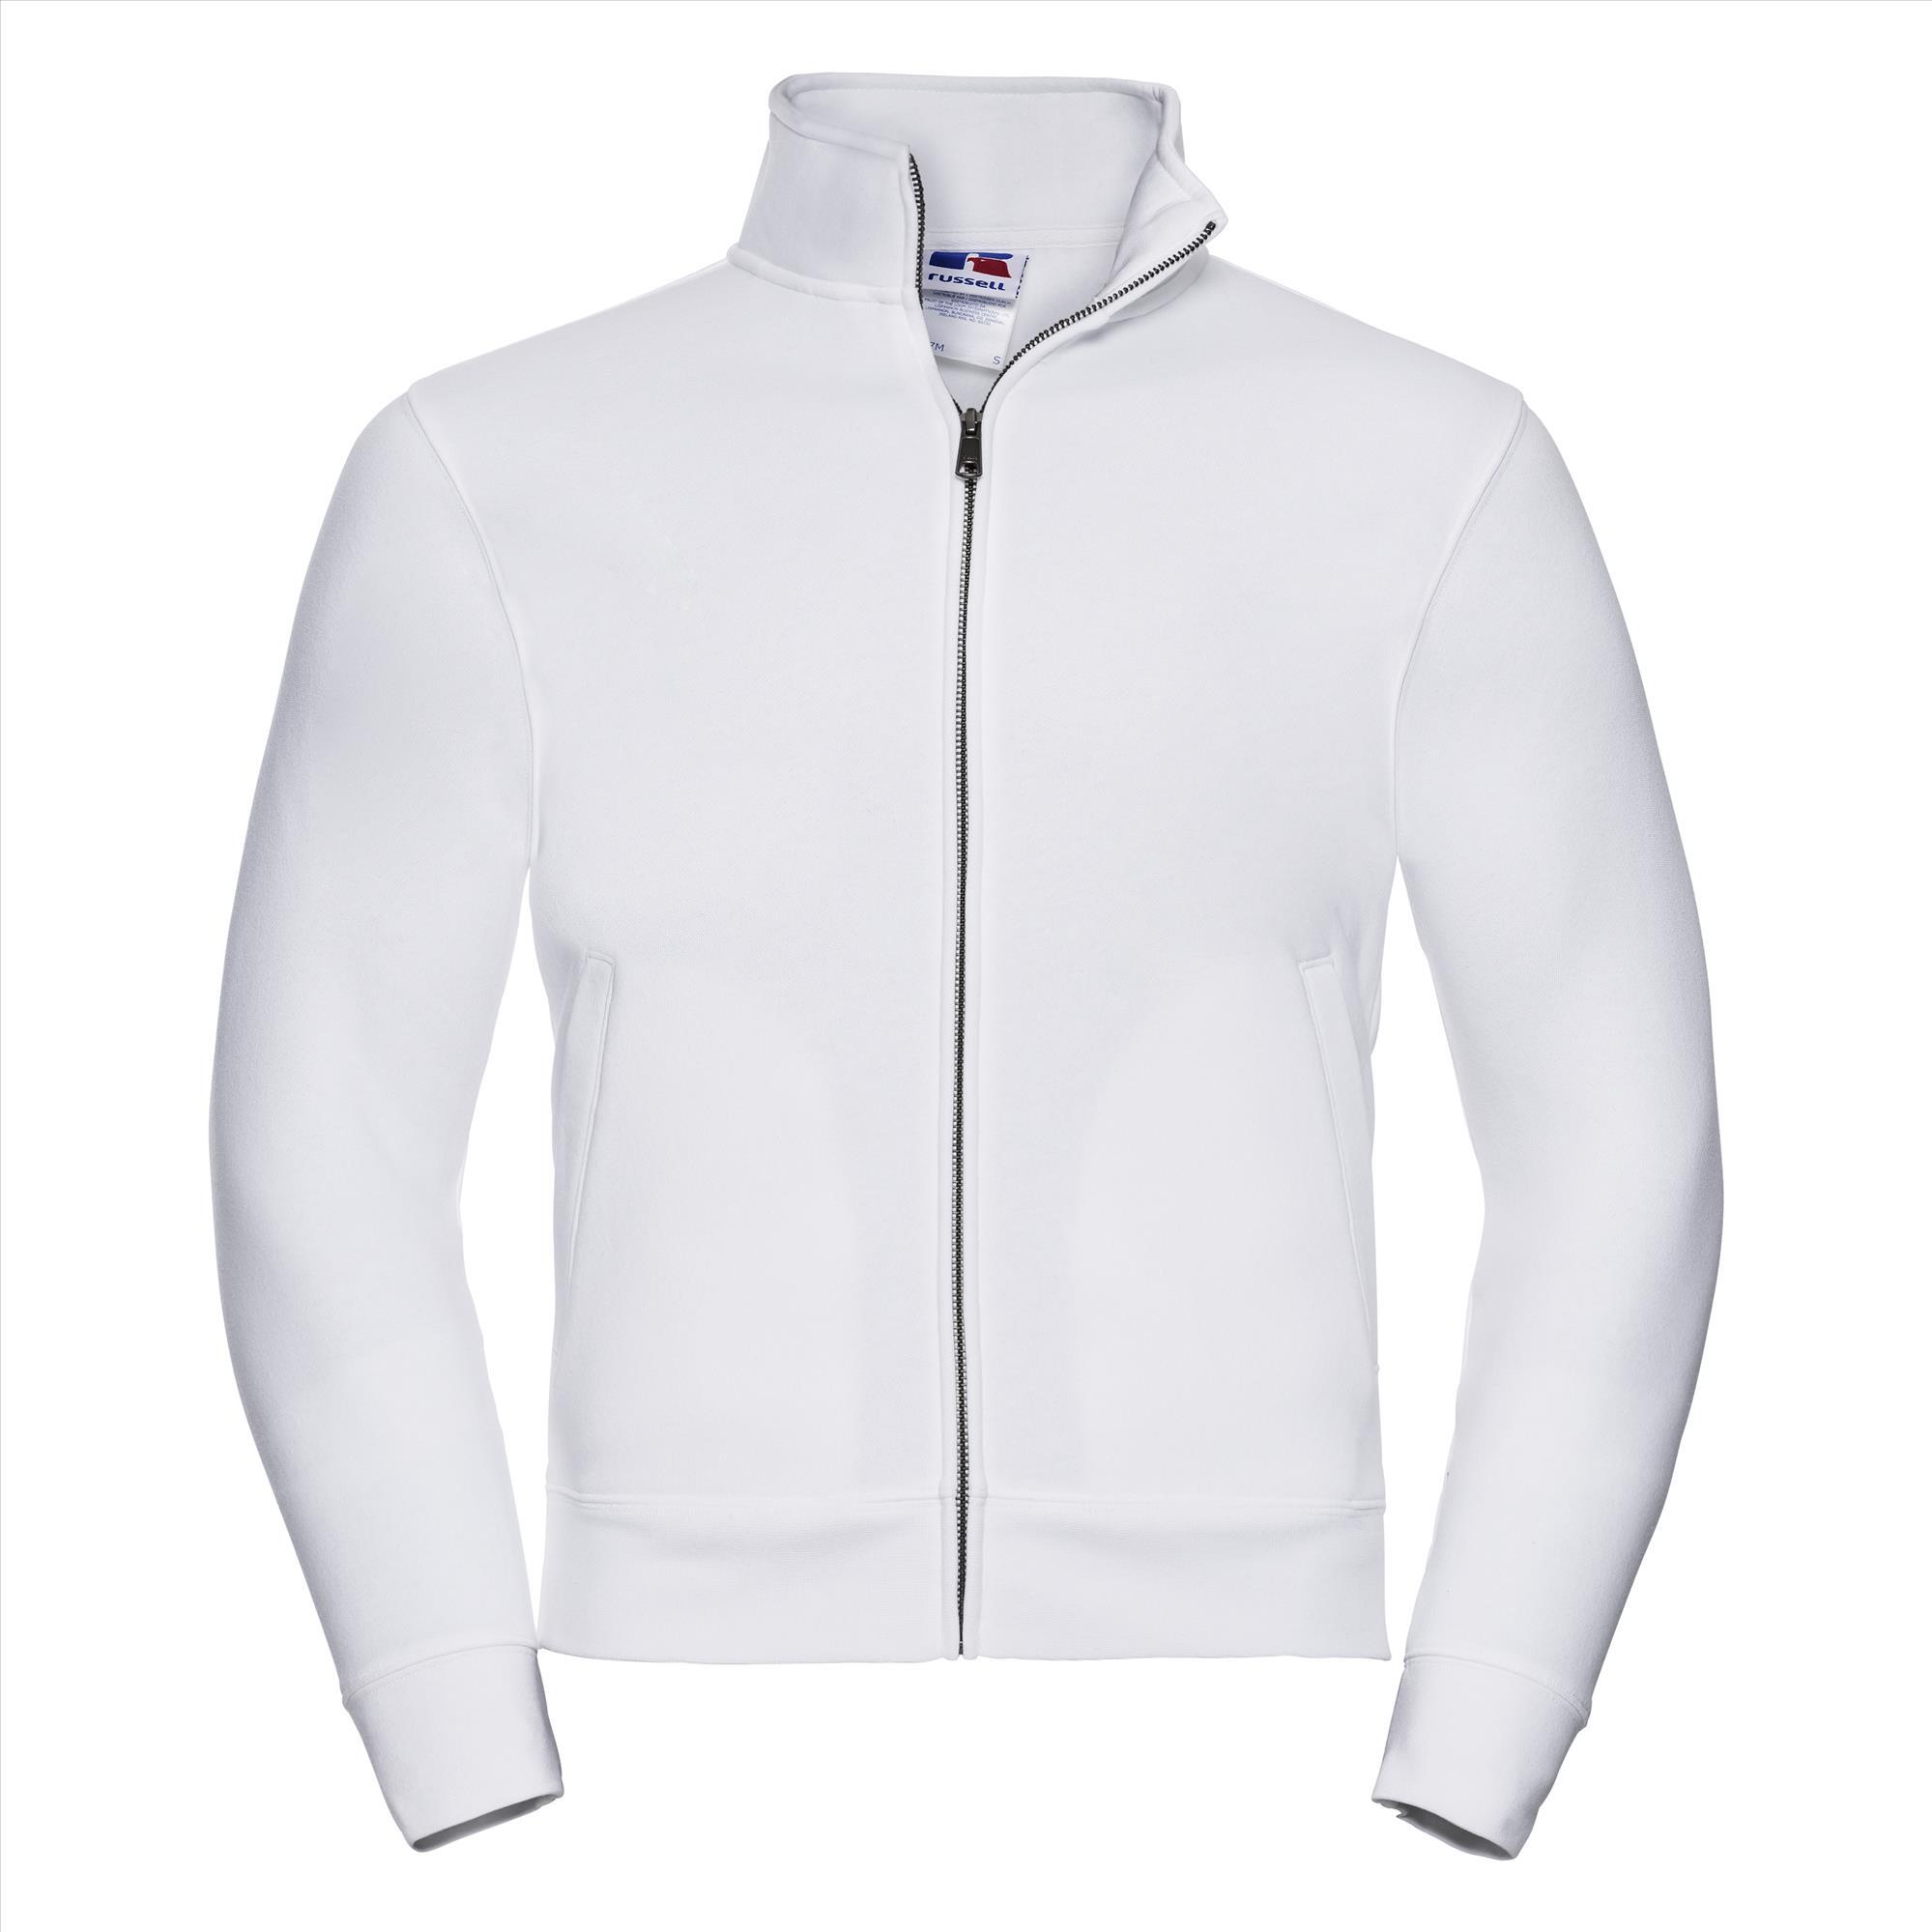 Sweatjacket wit voor mannen perfect voor persoonlijke bedrukking personaliseren